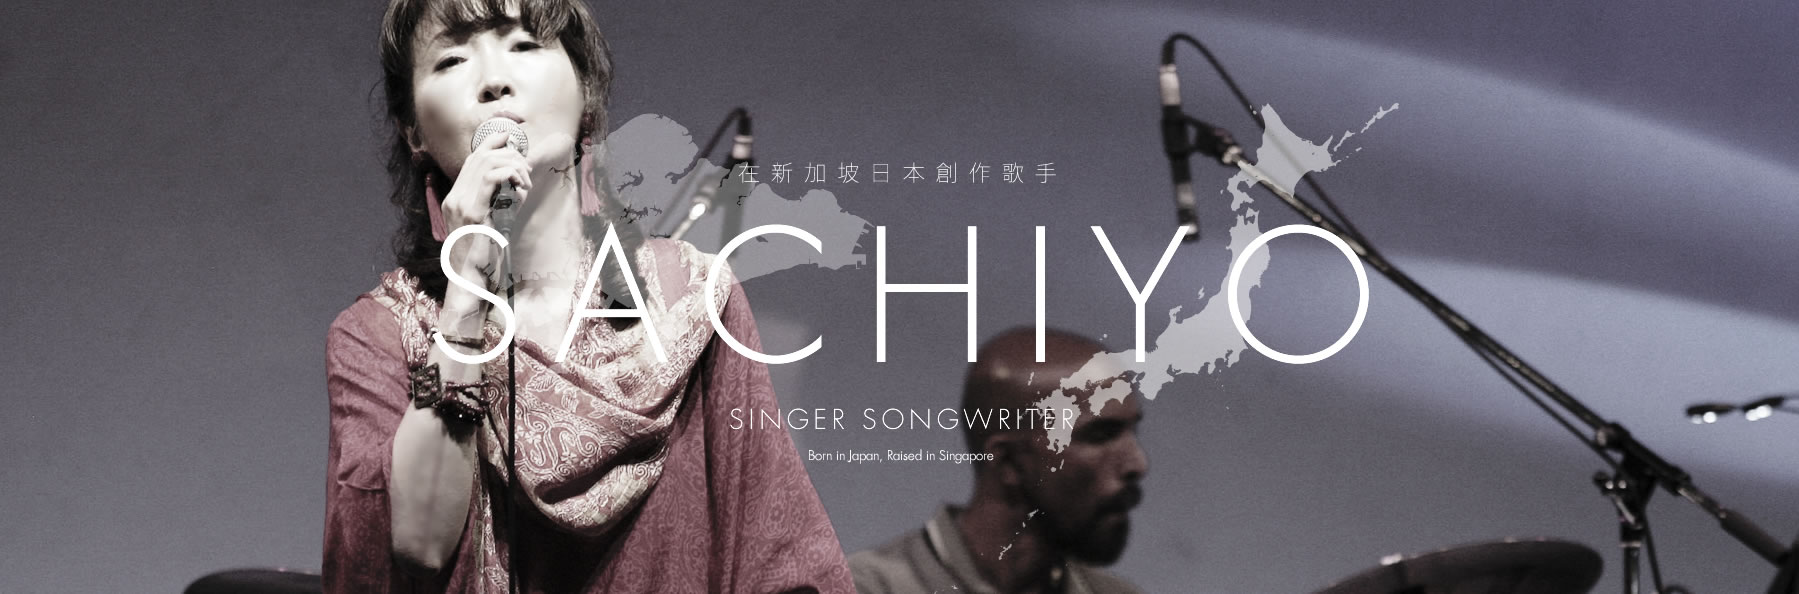 SACHIYO singer songwriter